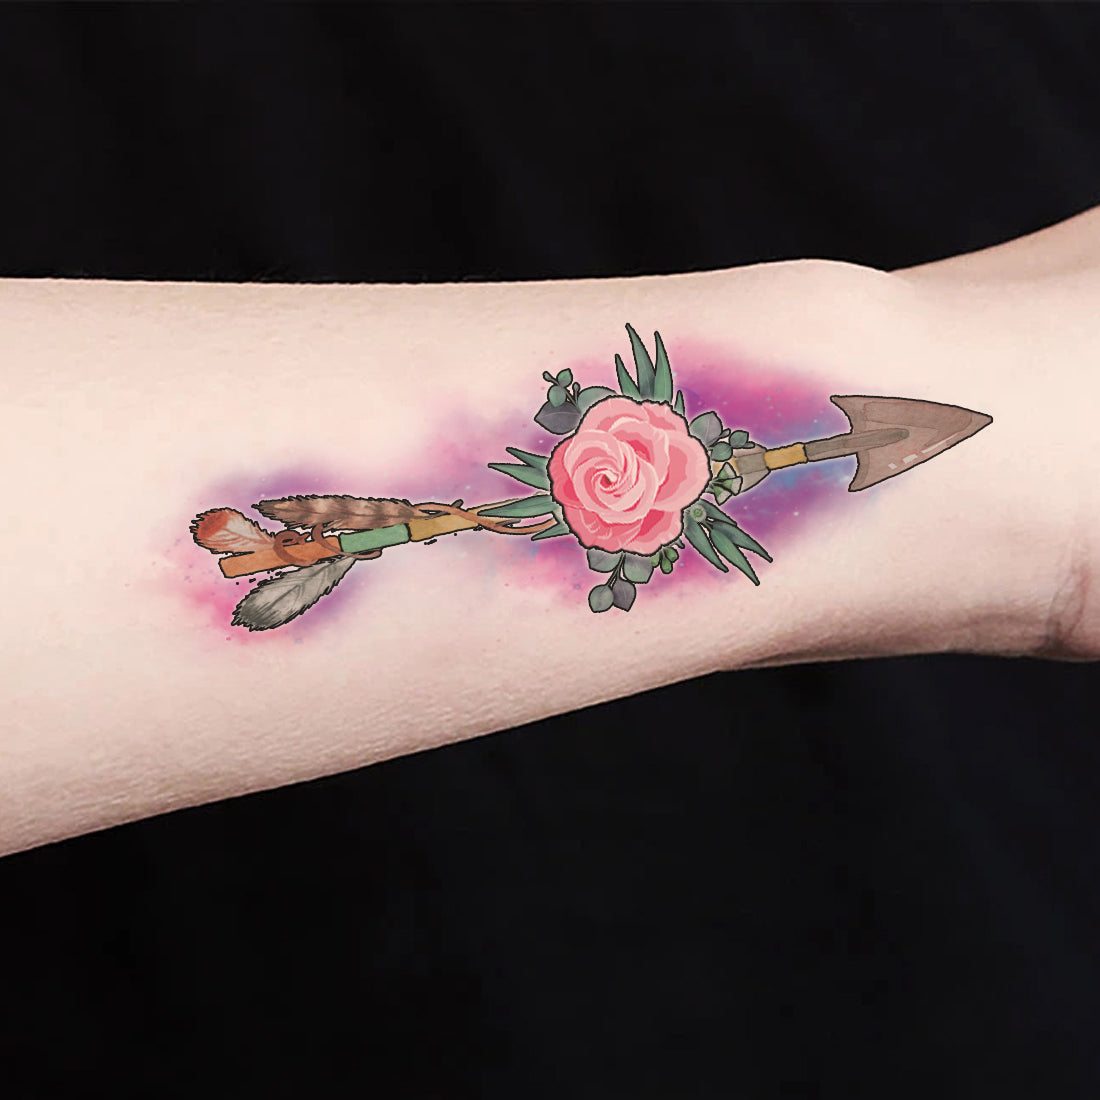 Amma Appa Tattoo fyp malaysia tattooartist gengeartunnel inkmast   TikTok